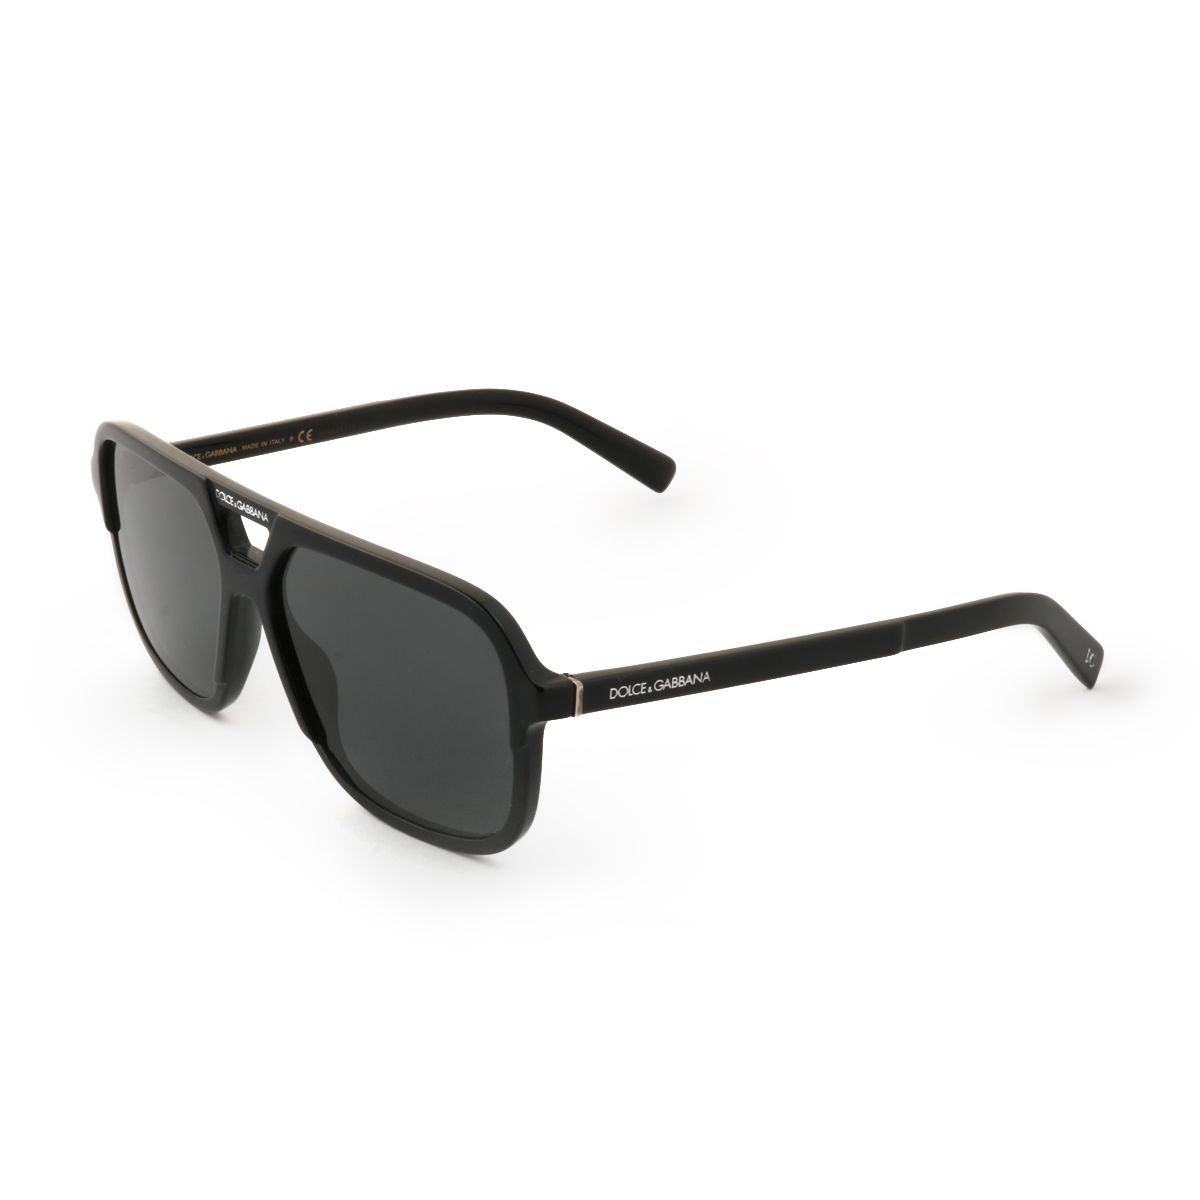 DG4354 Pilot Sunglasses 501 87 - size 58